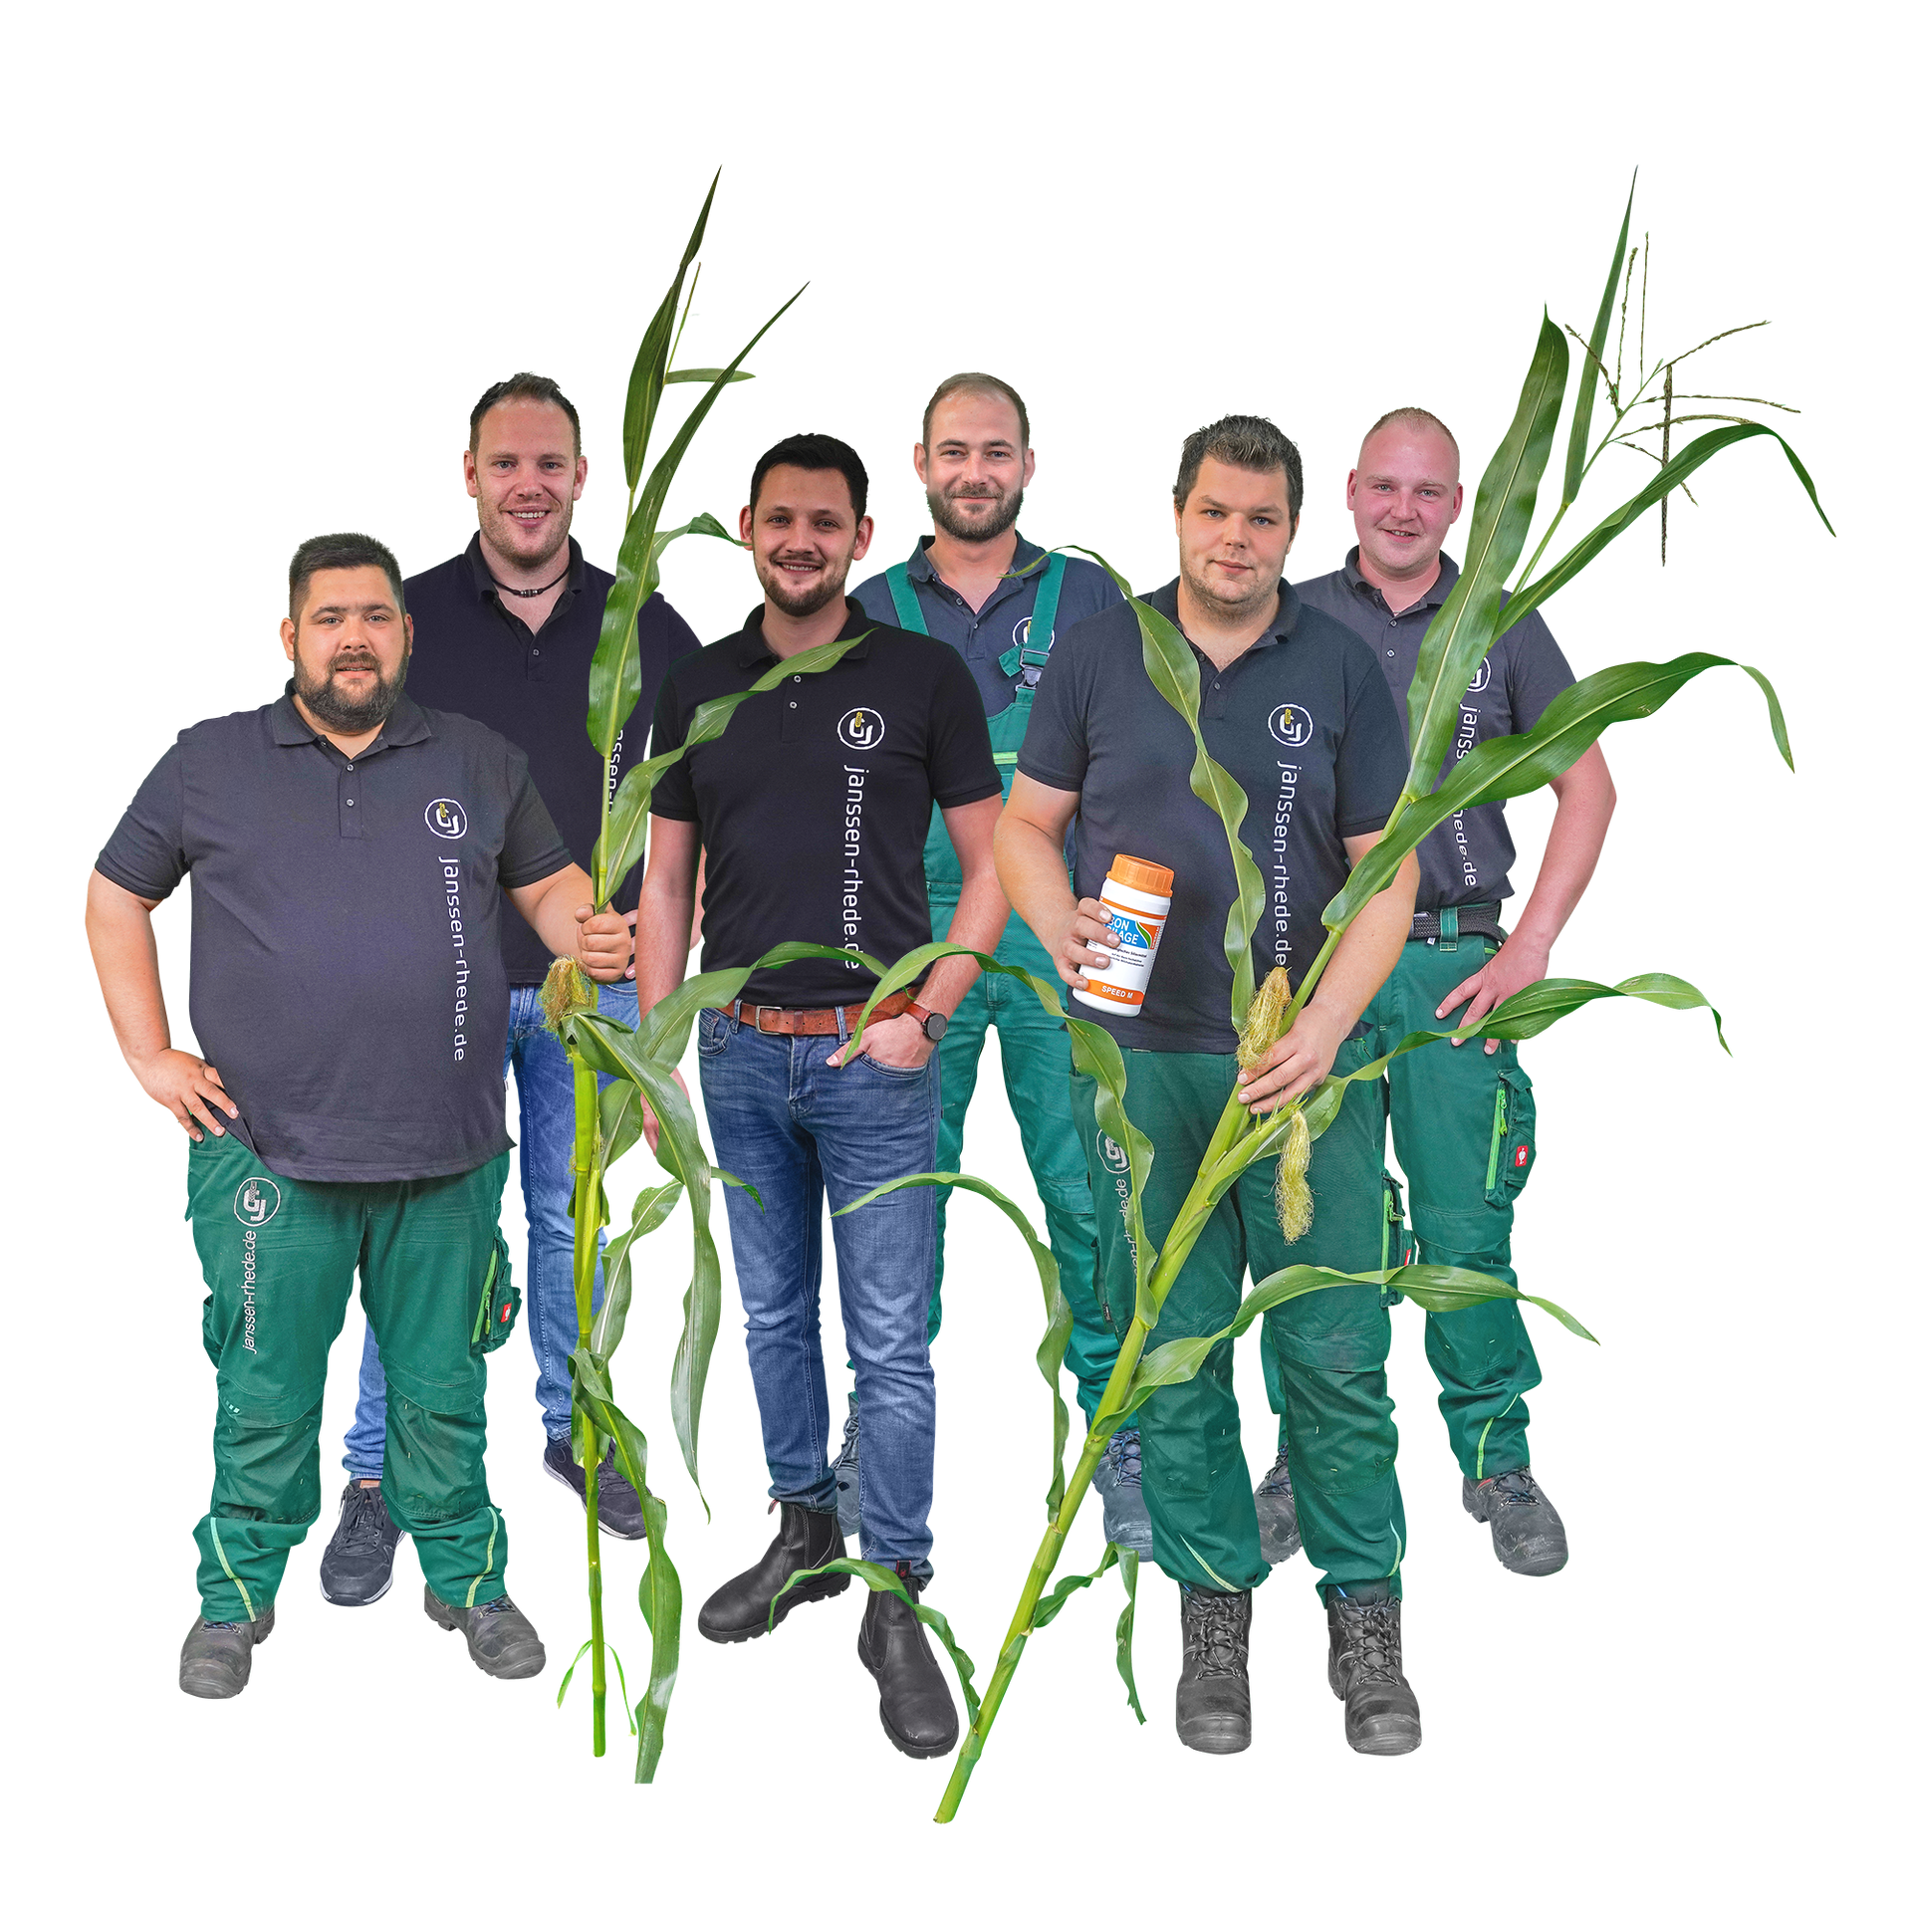 Eine Gruppe von Männern von Janssen GmbH & Co. KG Rhede/Ems, die nebeneinander stehen und Maispflanzen halten.